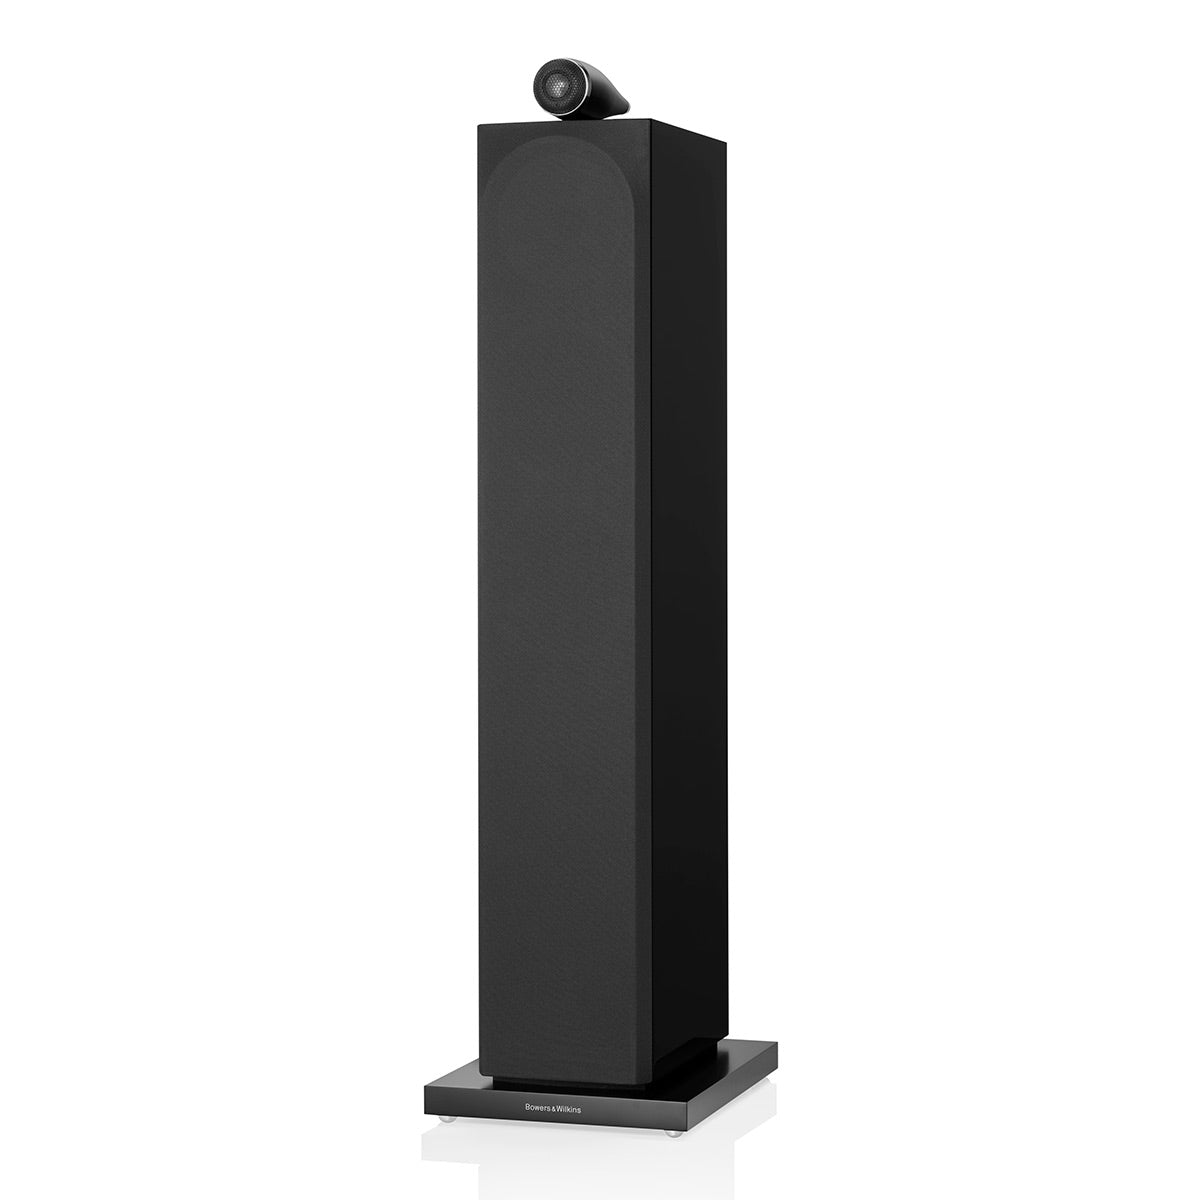 Bowers & Wilkins 703 S3 3-Way Floorstanding Speaker - Pair (Gloss Black)